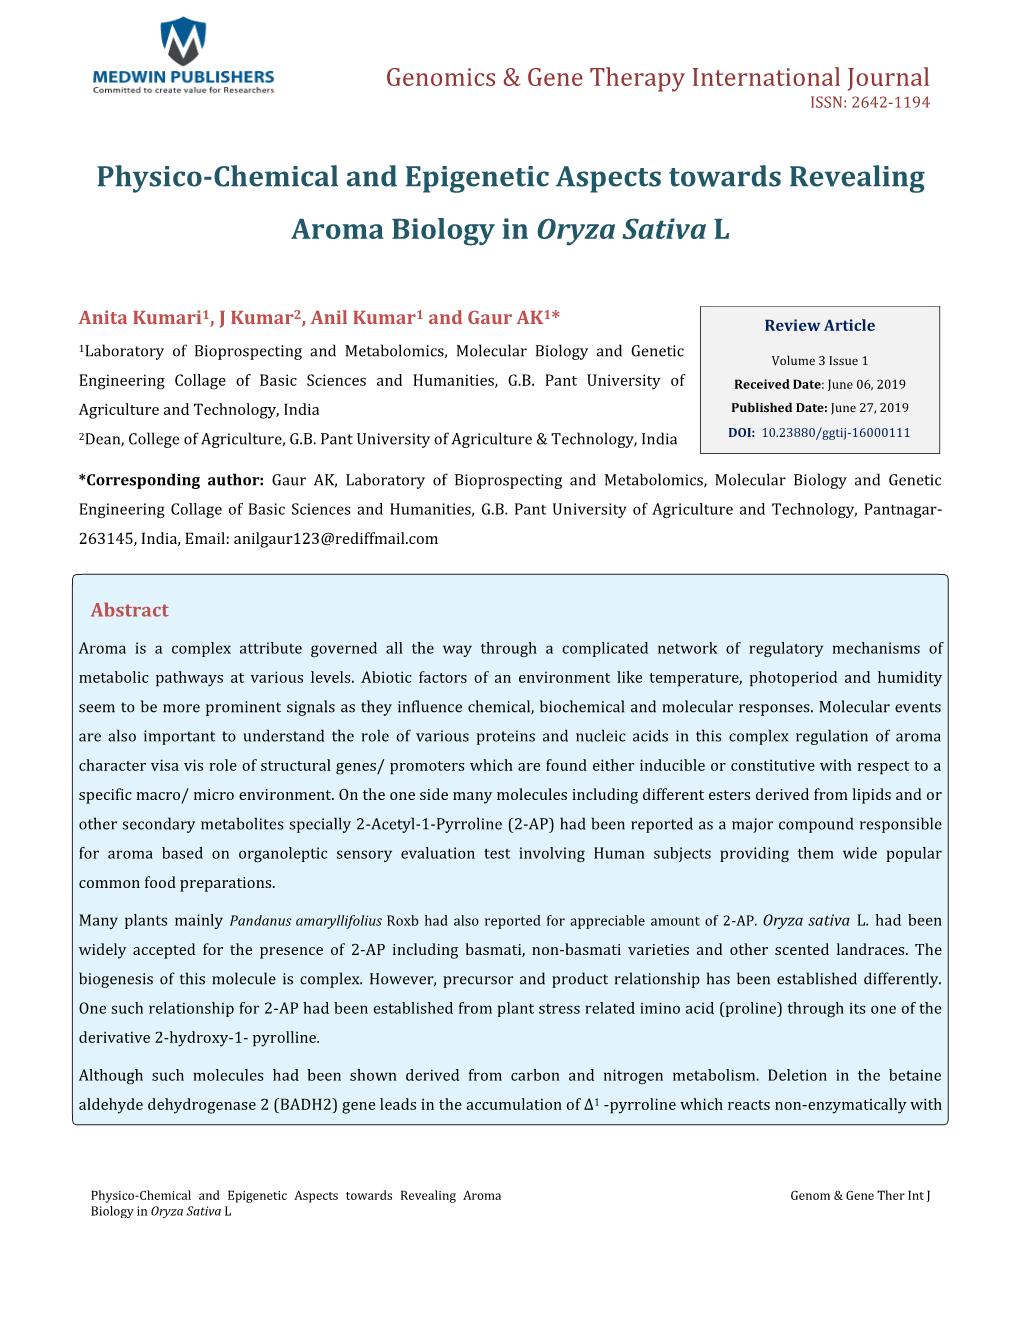 Gaur AK, Et Al. Physico-Chemical and Epigenetic Aspects Towards Revealing Copyright© Gaur AK, Et Al